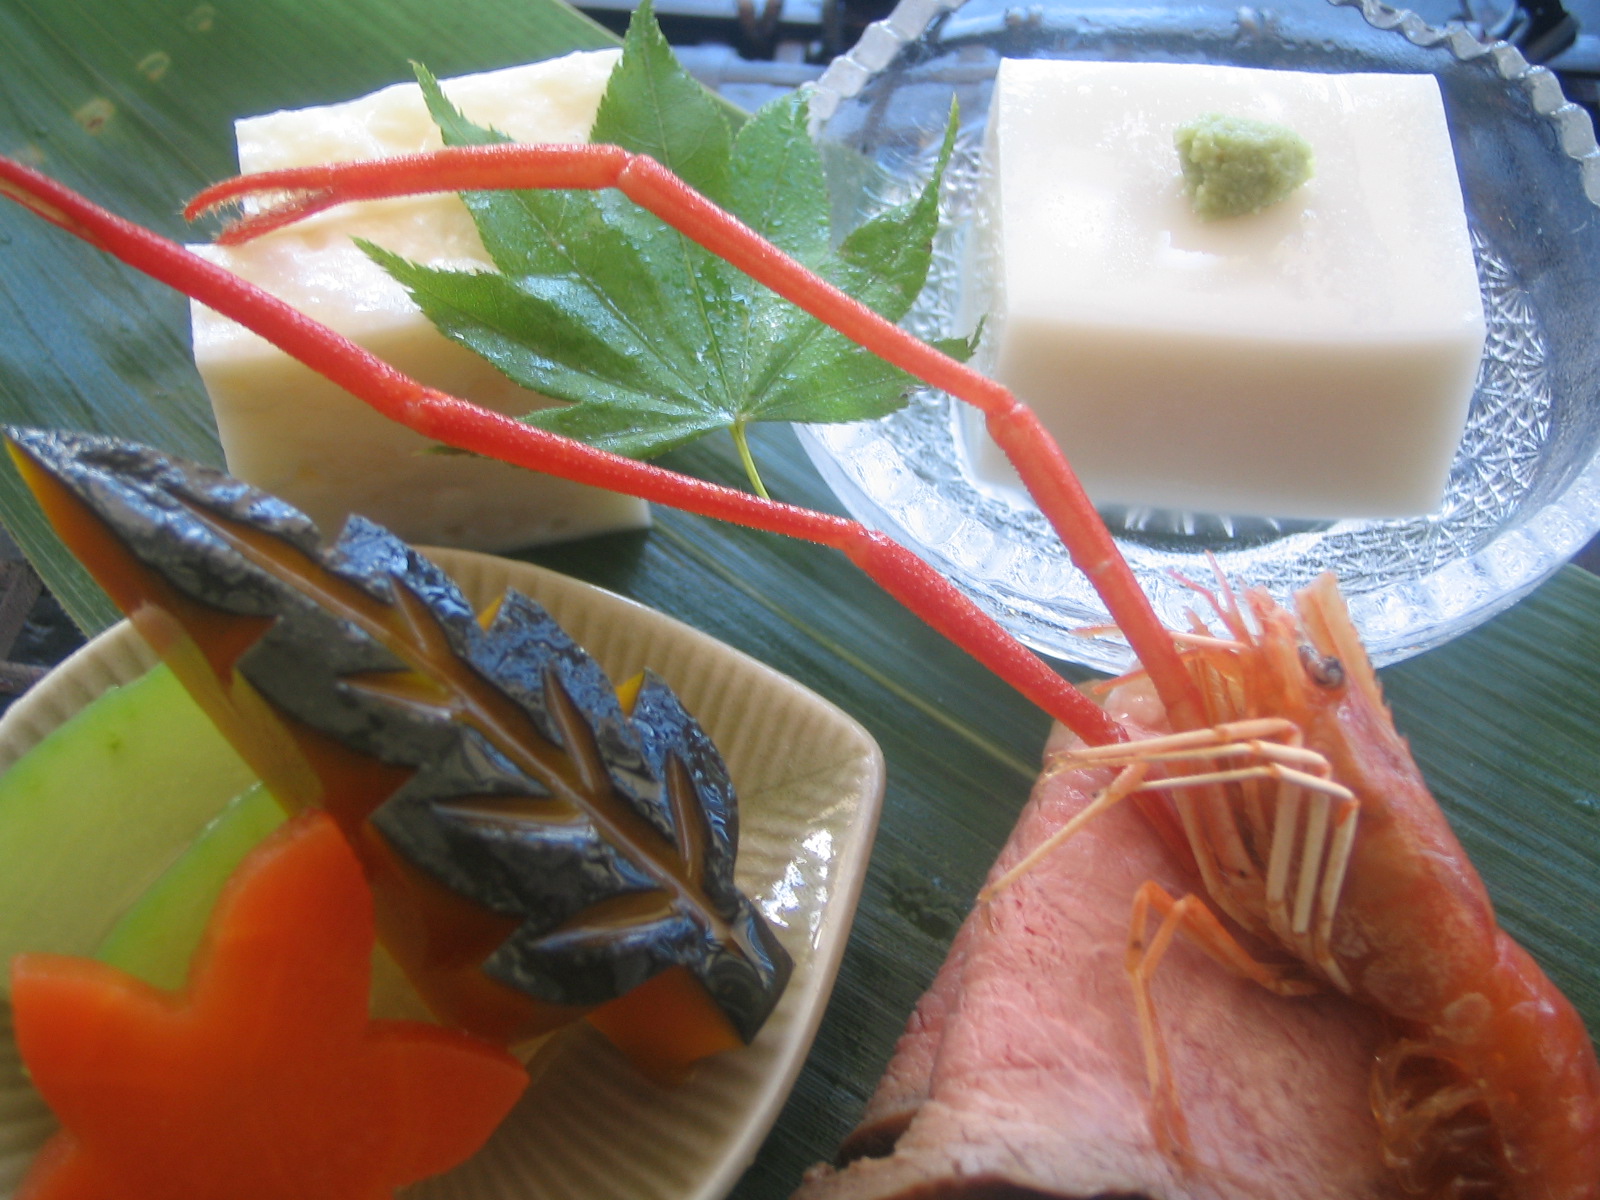 メイン料理が選べるミニ懐石風の桃香セット